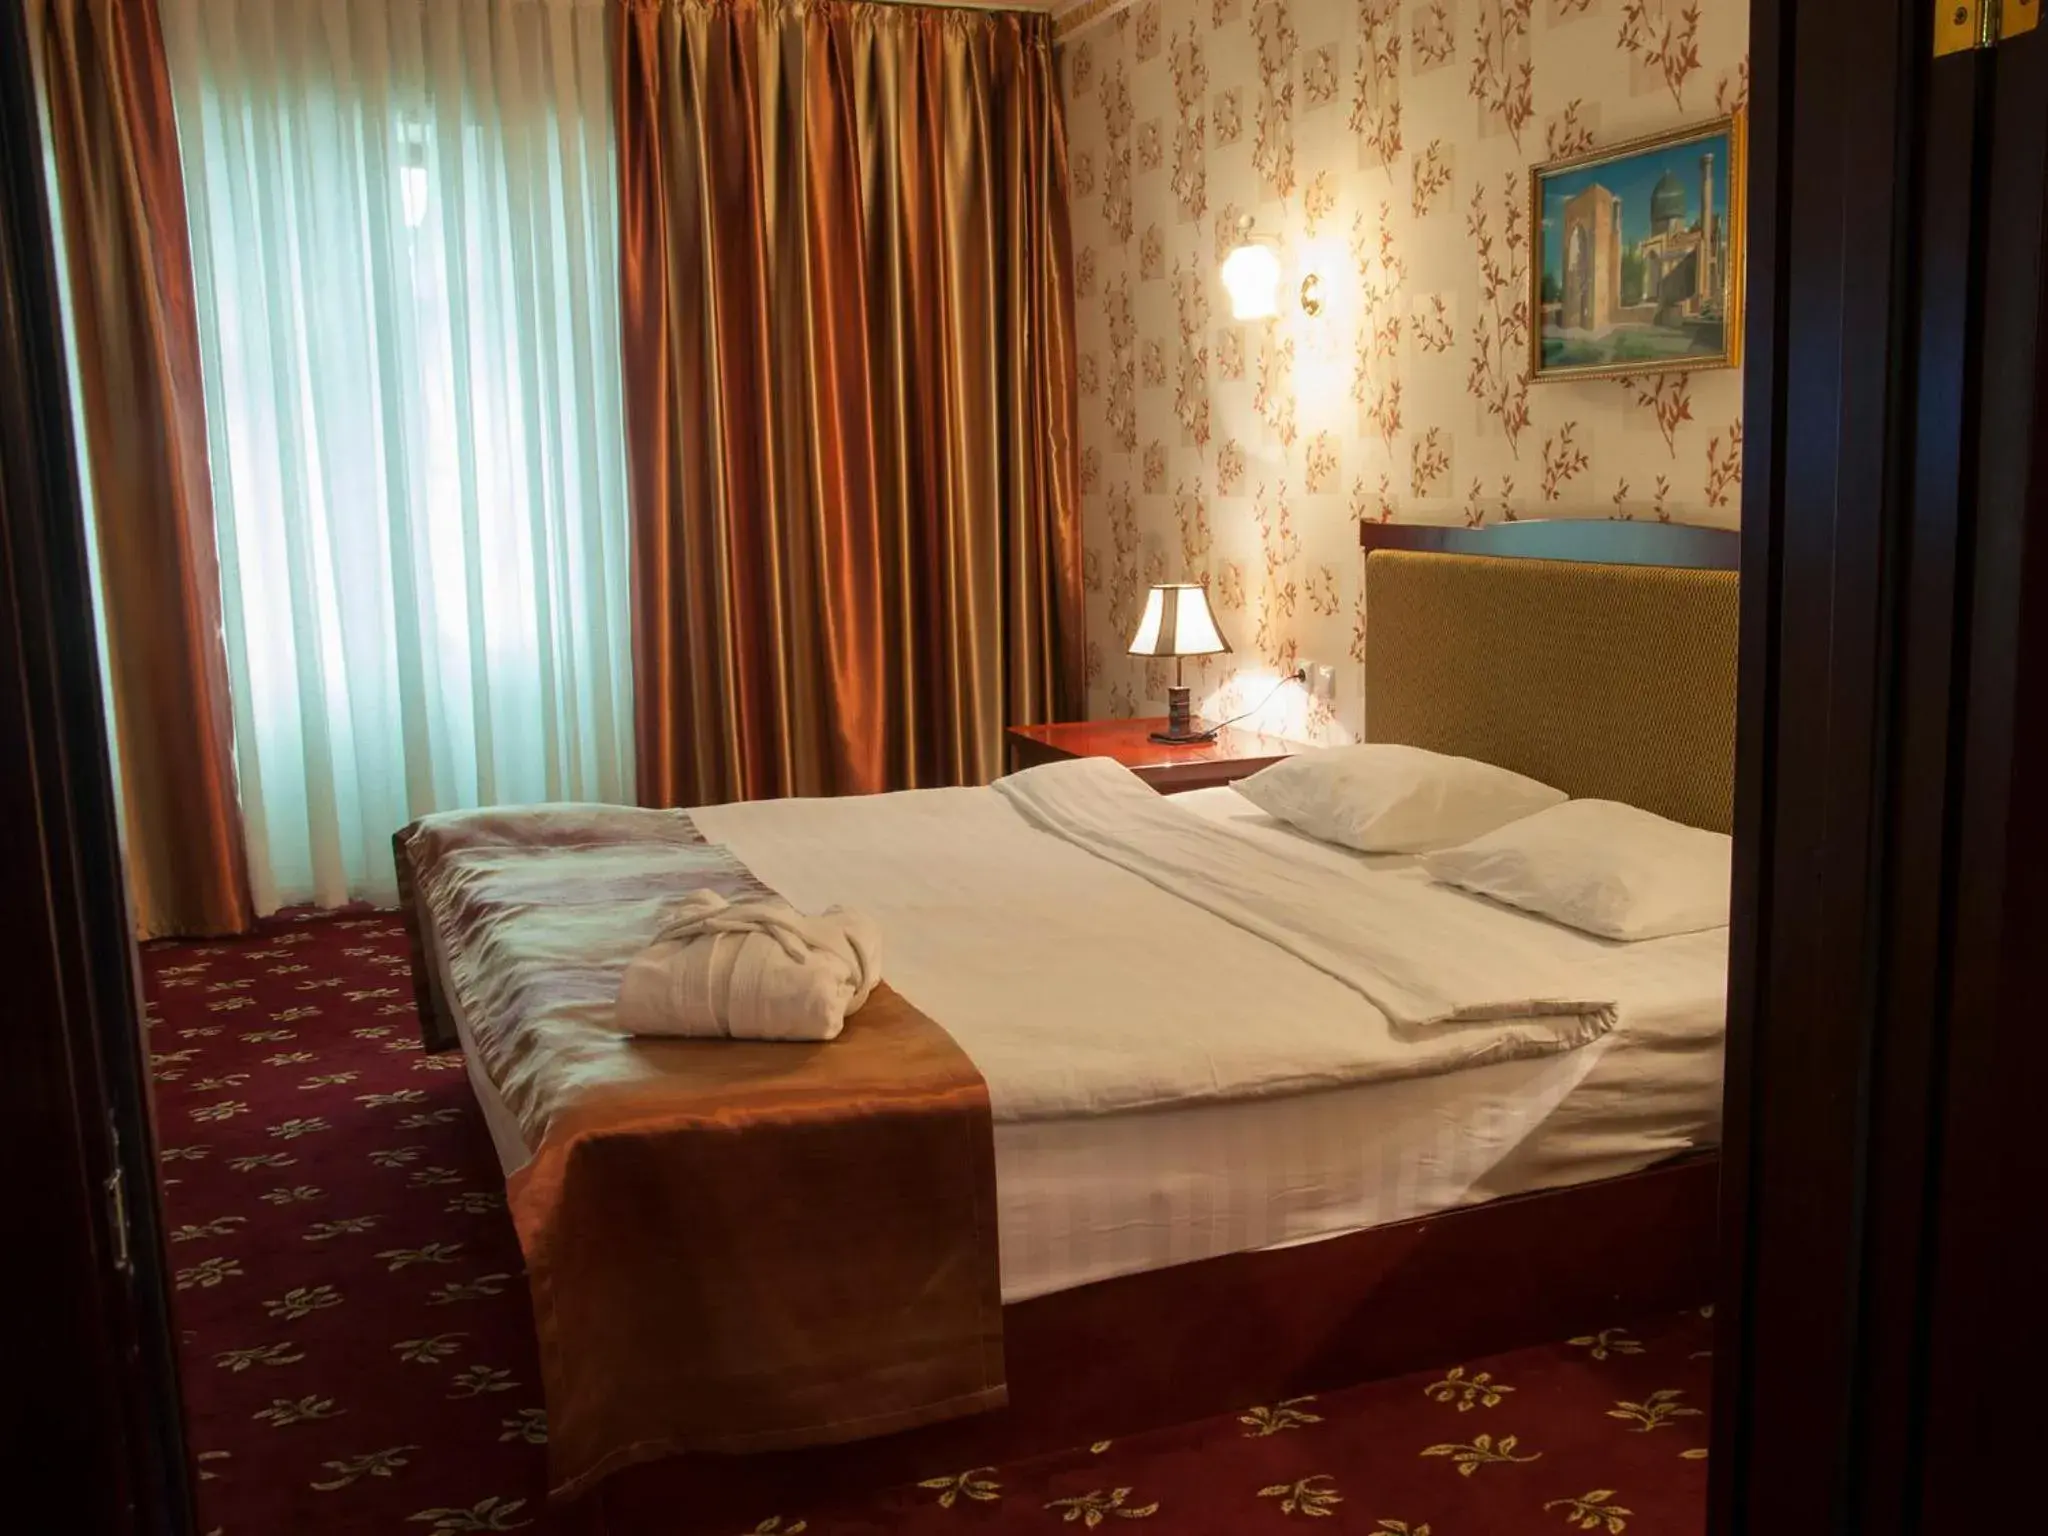 Bedroom, Bed in Golden Valley Hotel